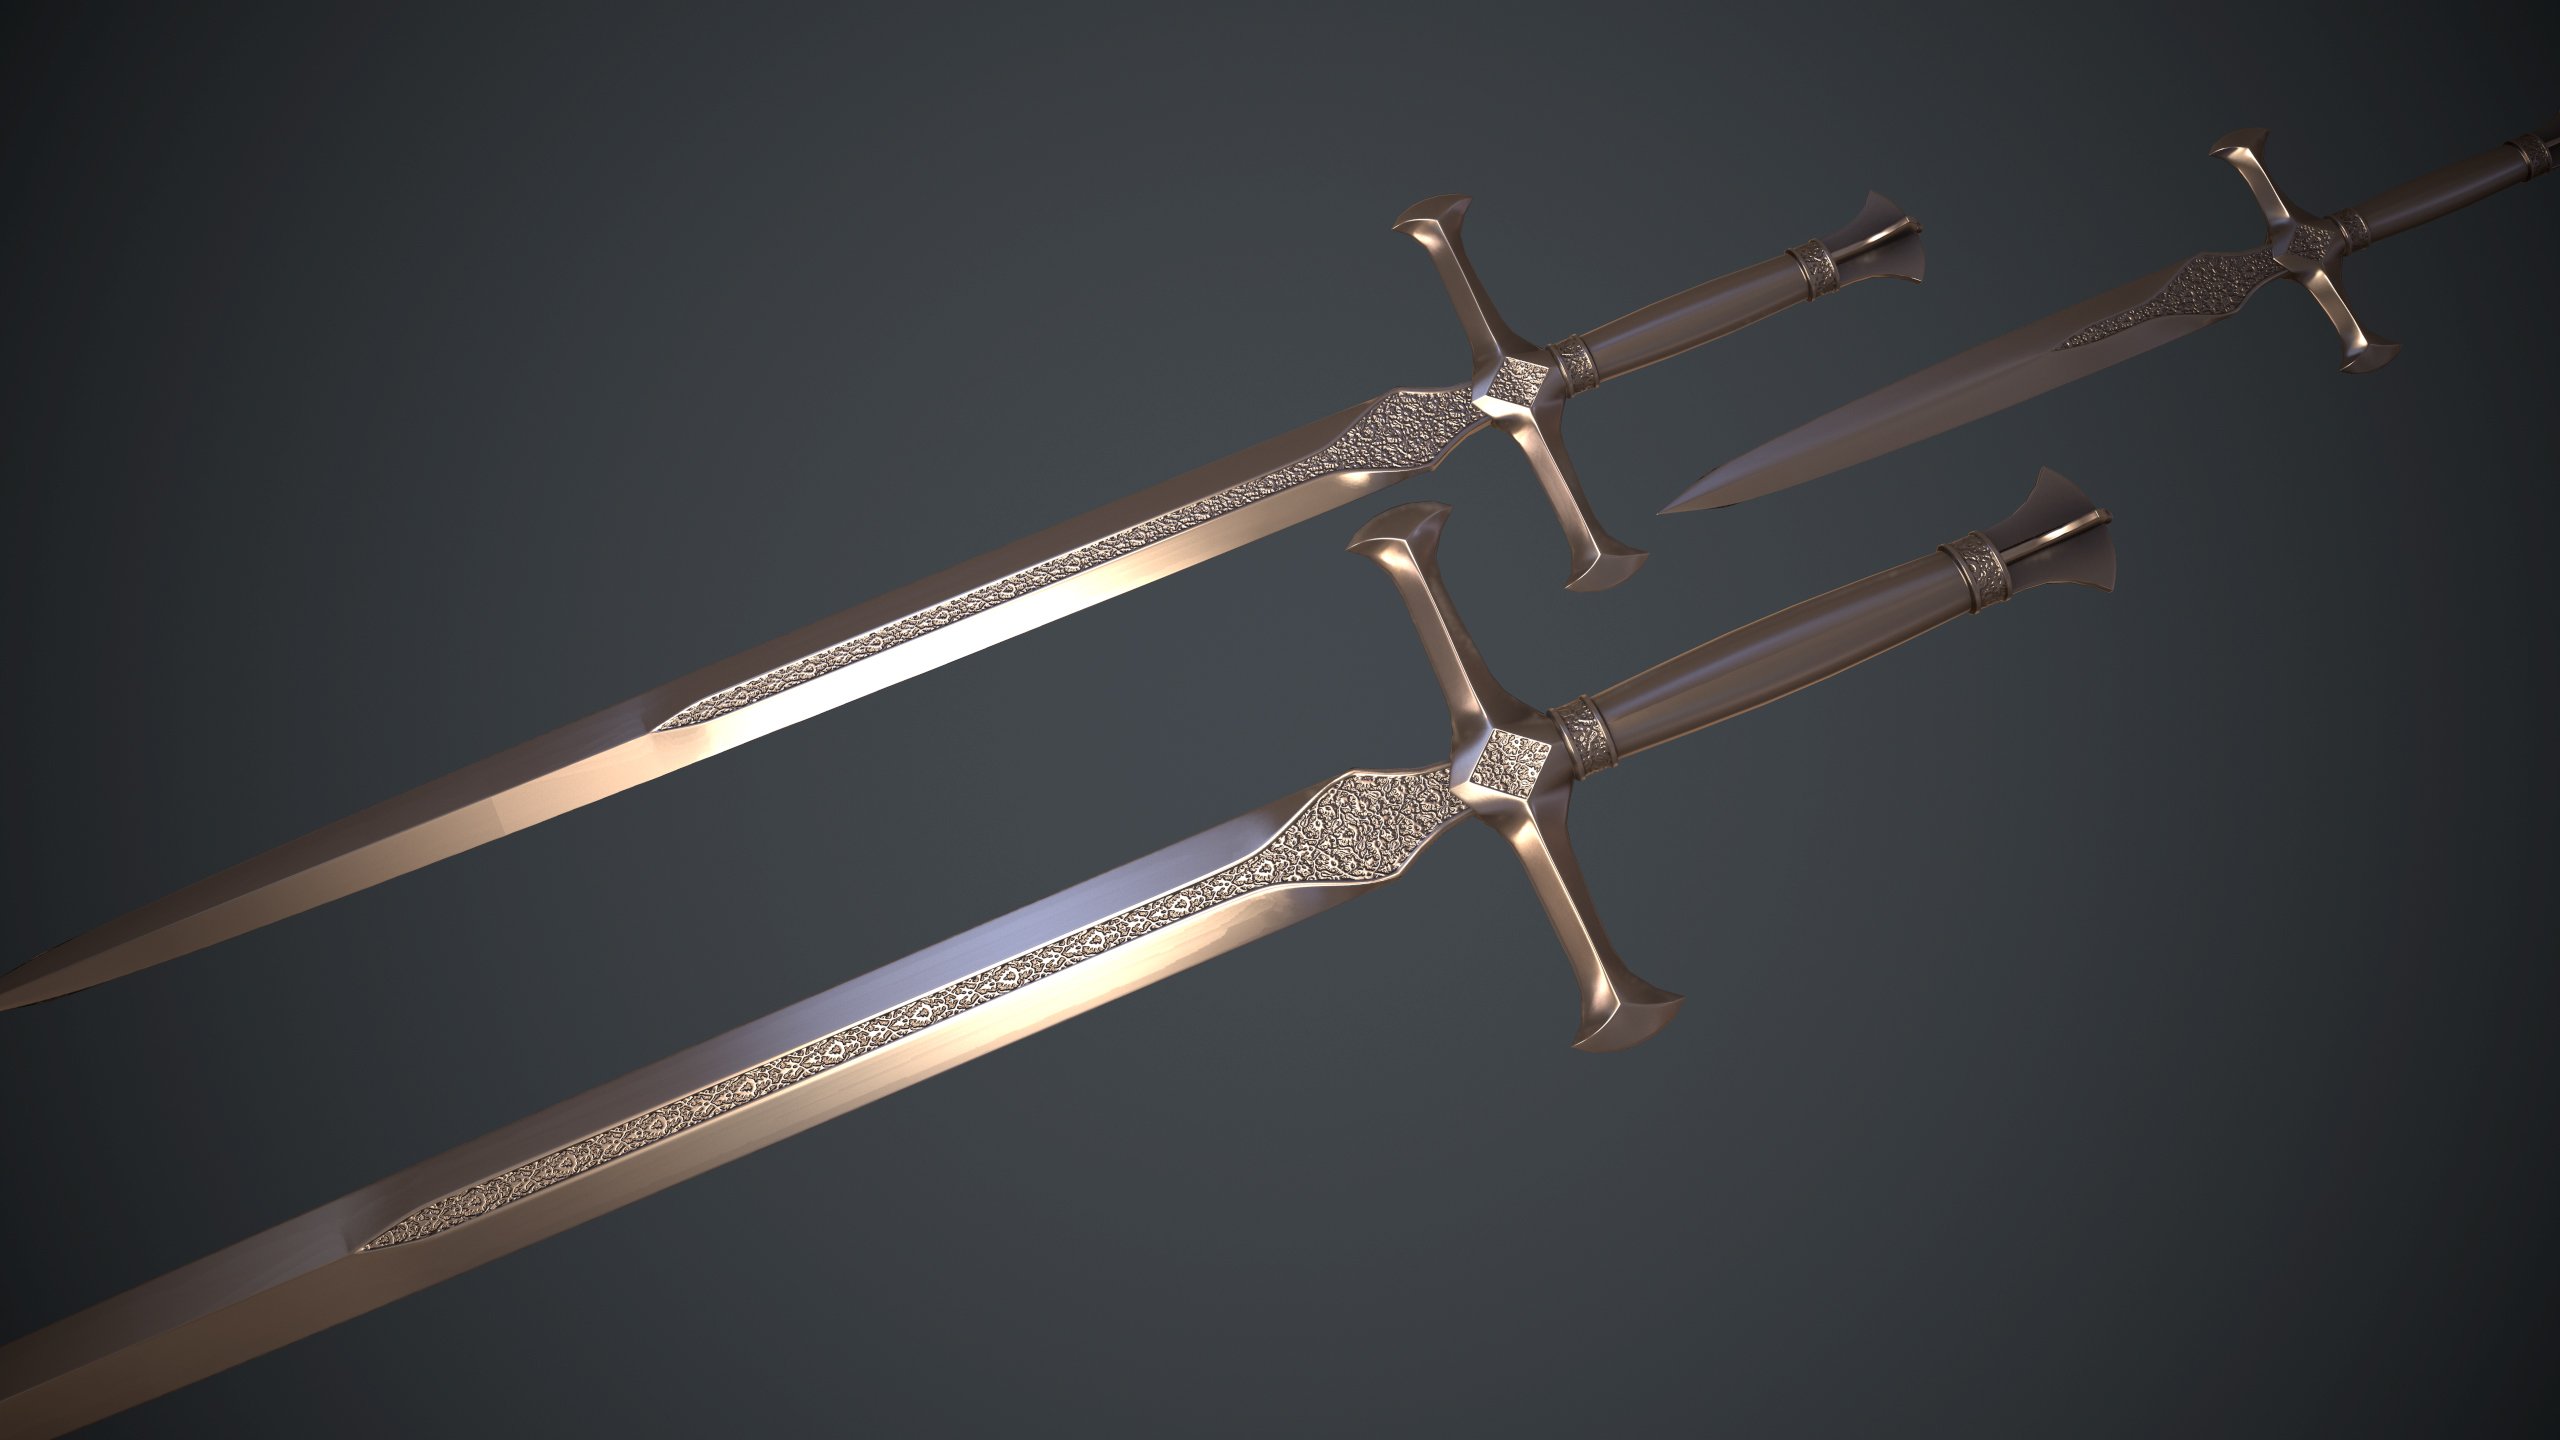 Silver Sword (серебряный меч)